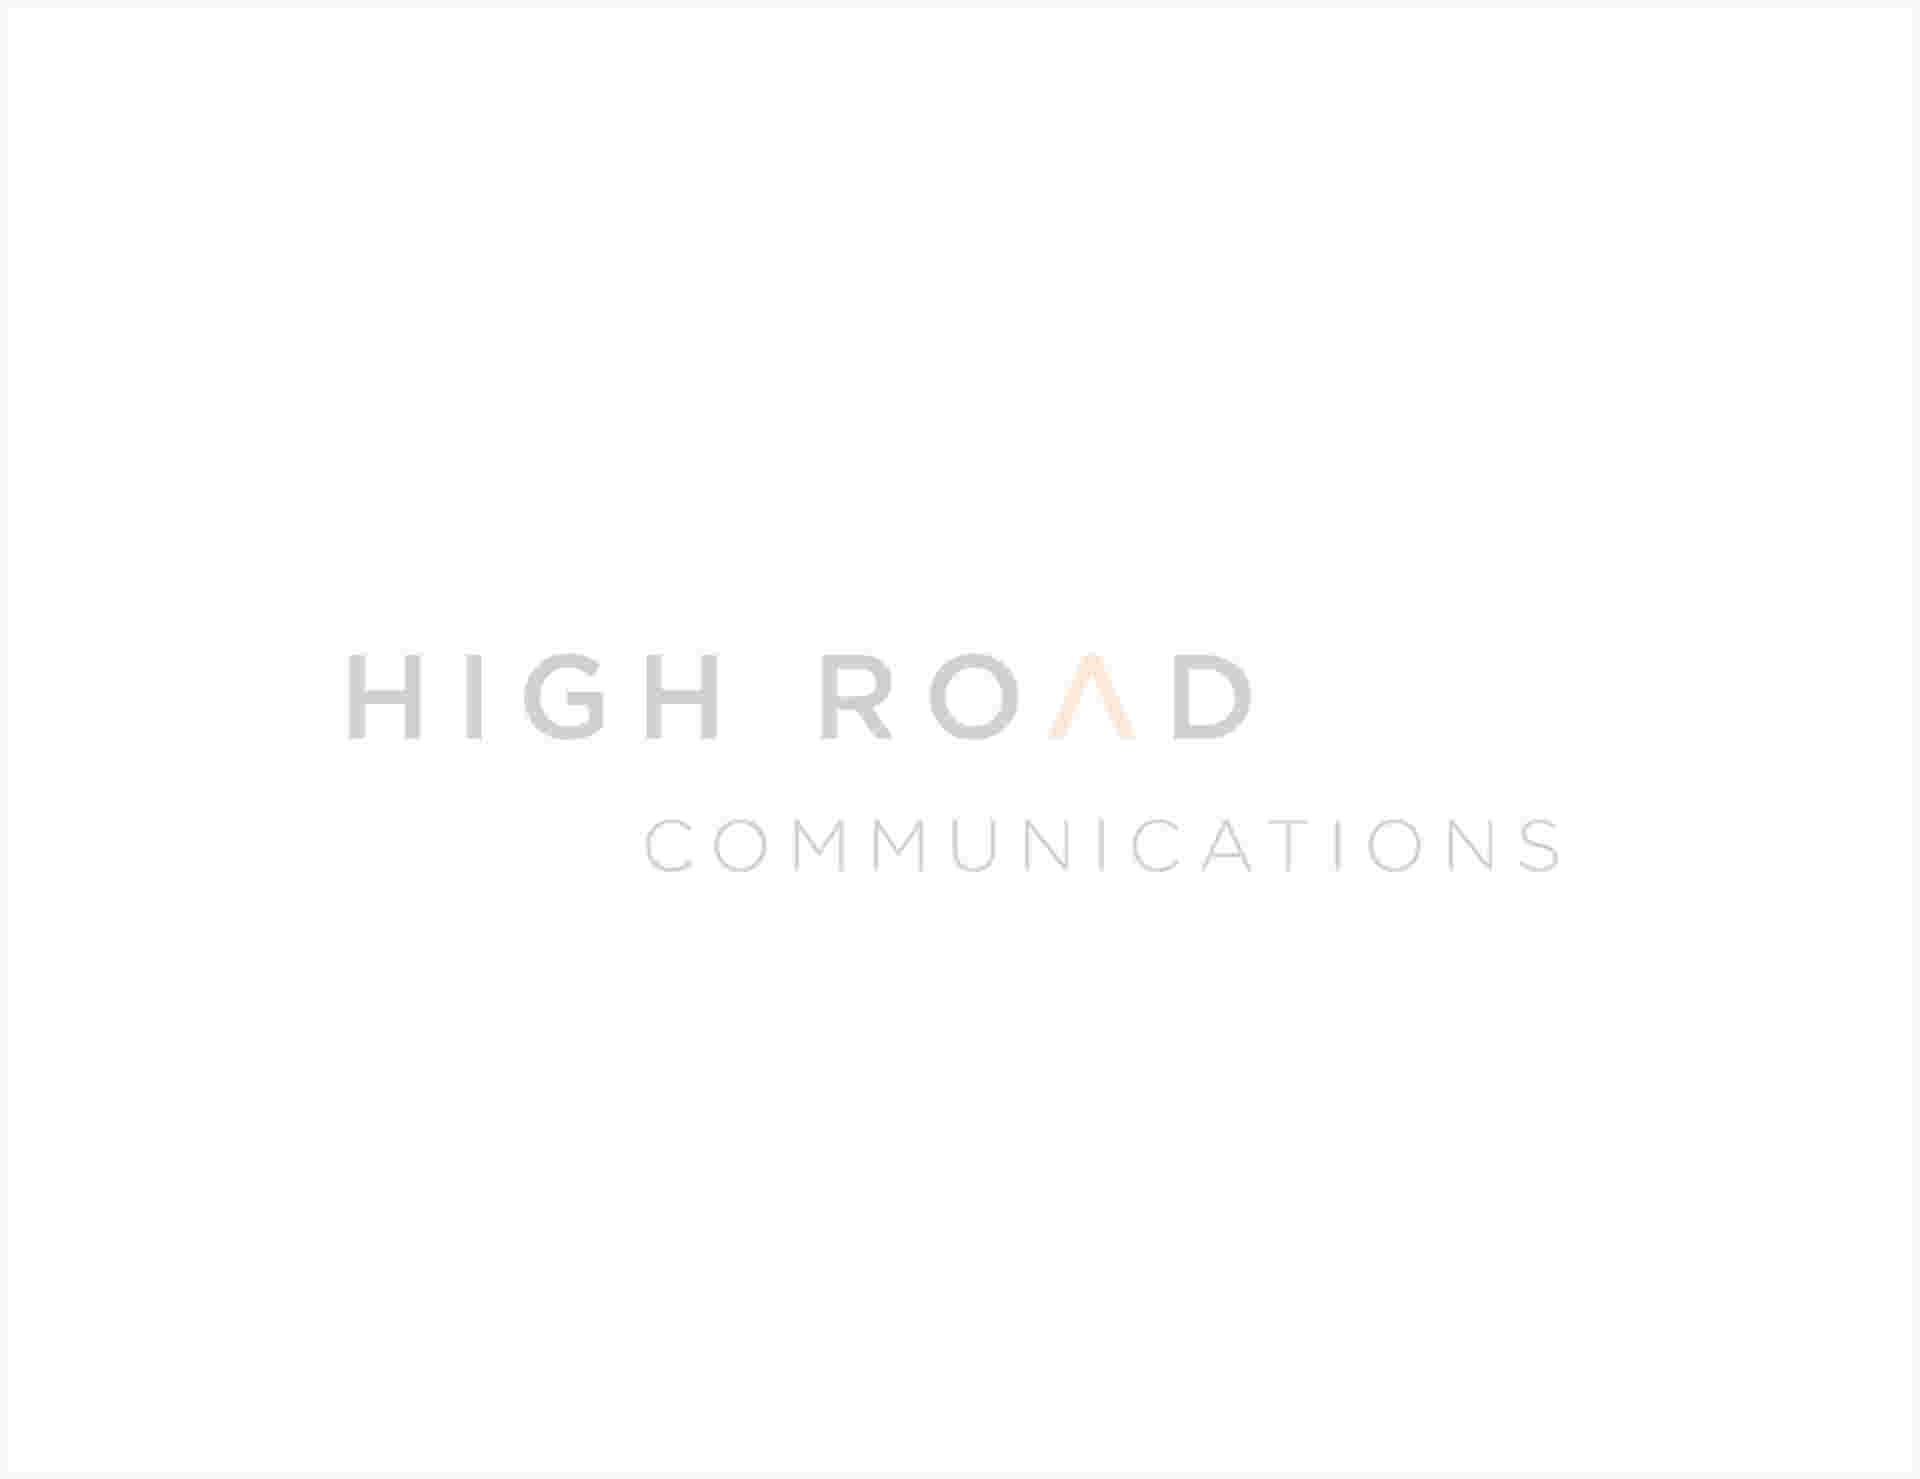 High Road Communications - HighRoad-2_1